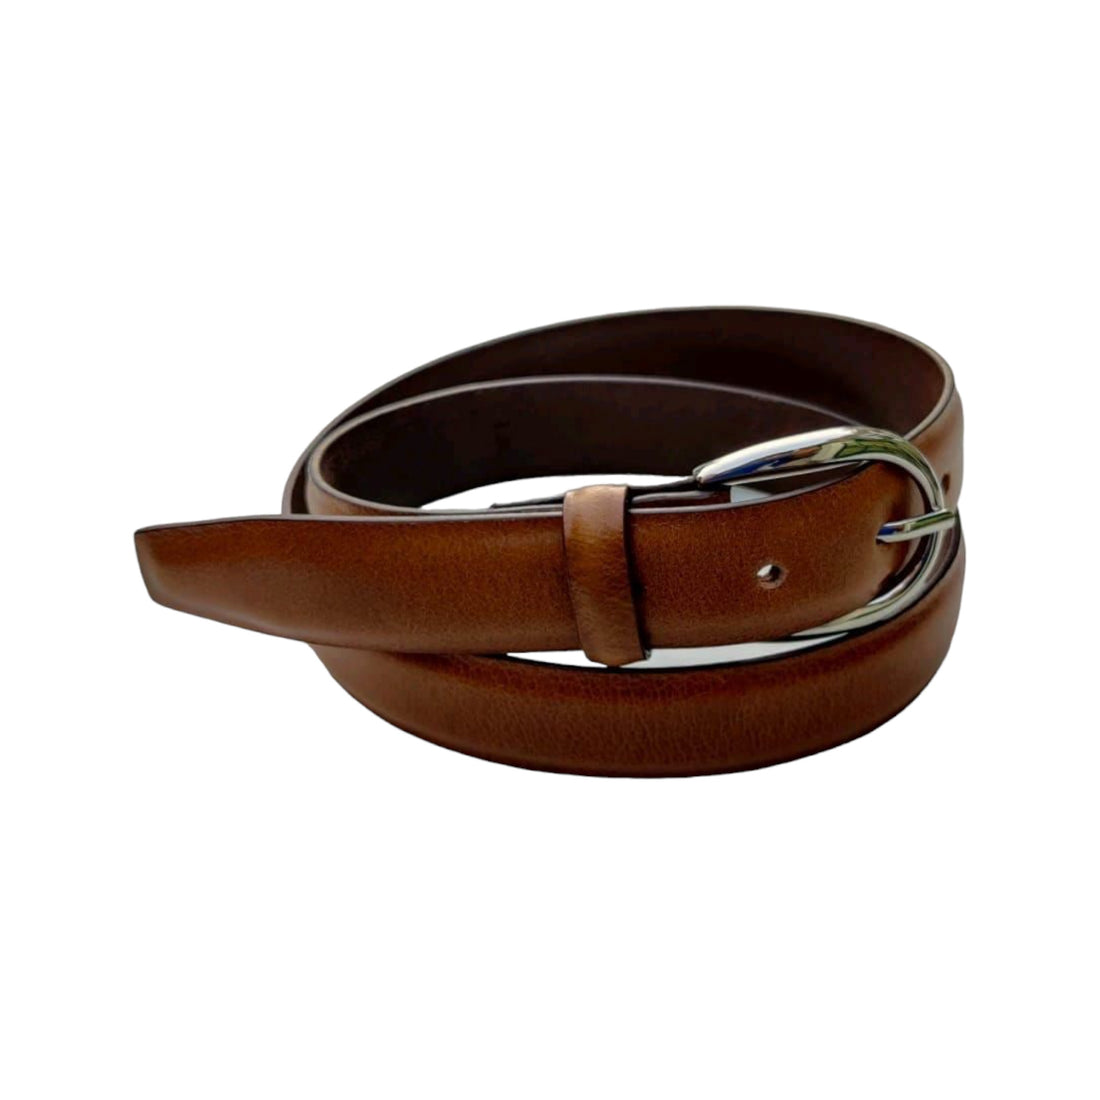 Mens formal leather belt